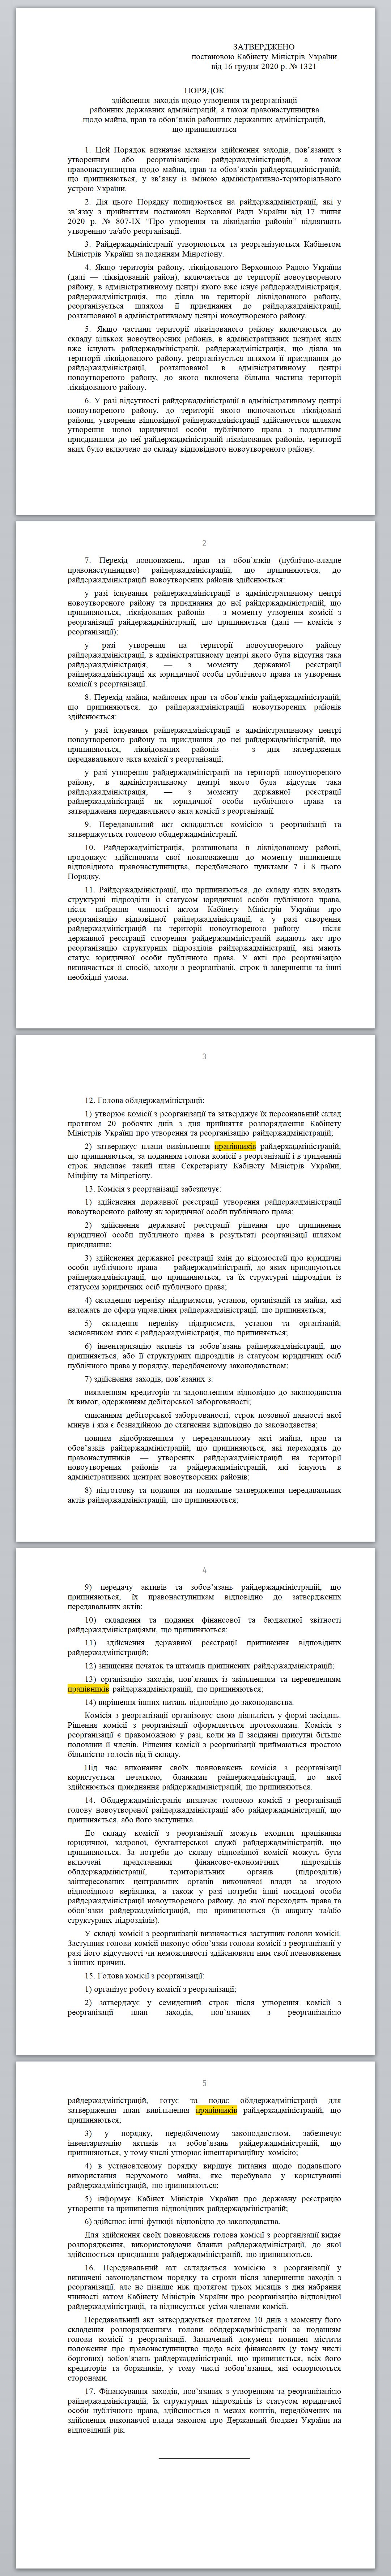 https://www.kmu.gov.ua/npas/pro-zatverdzhennya-poryadku-zdijsnennya-zahodiv-shchodo-utvorennya-ta-reorganizaciyi-rajonnih-derzhavnih-administracij-1321-161220